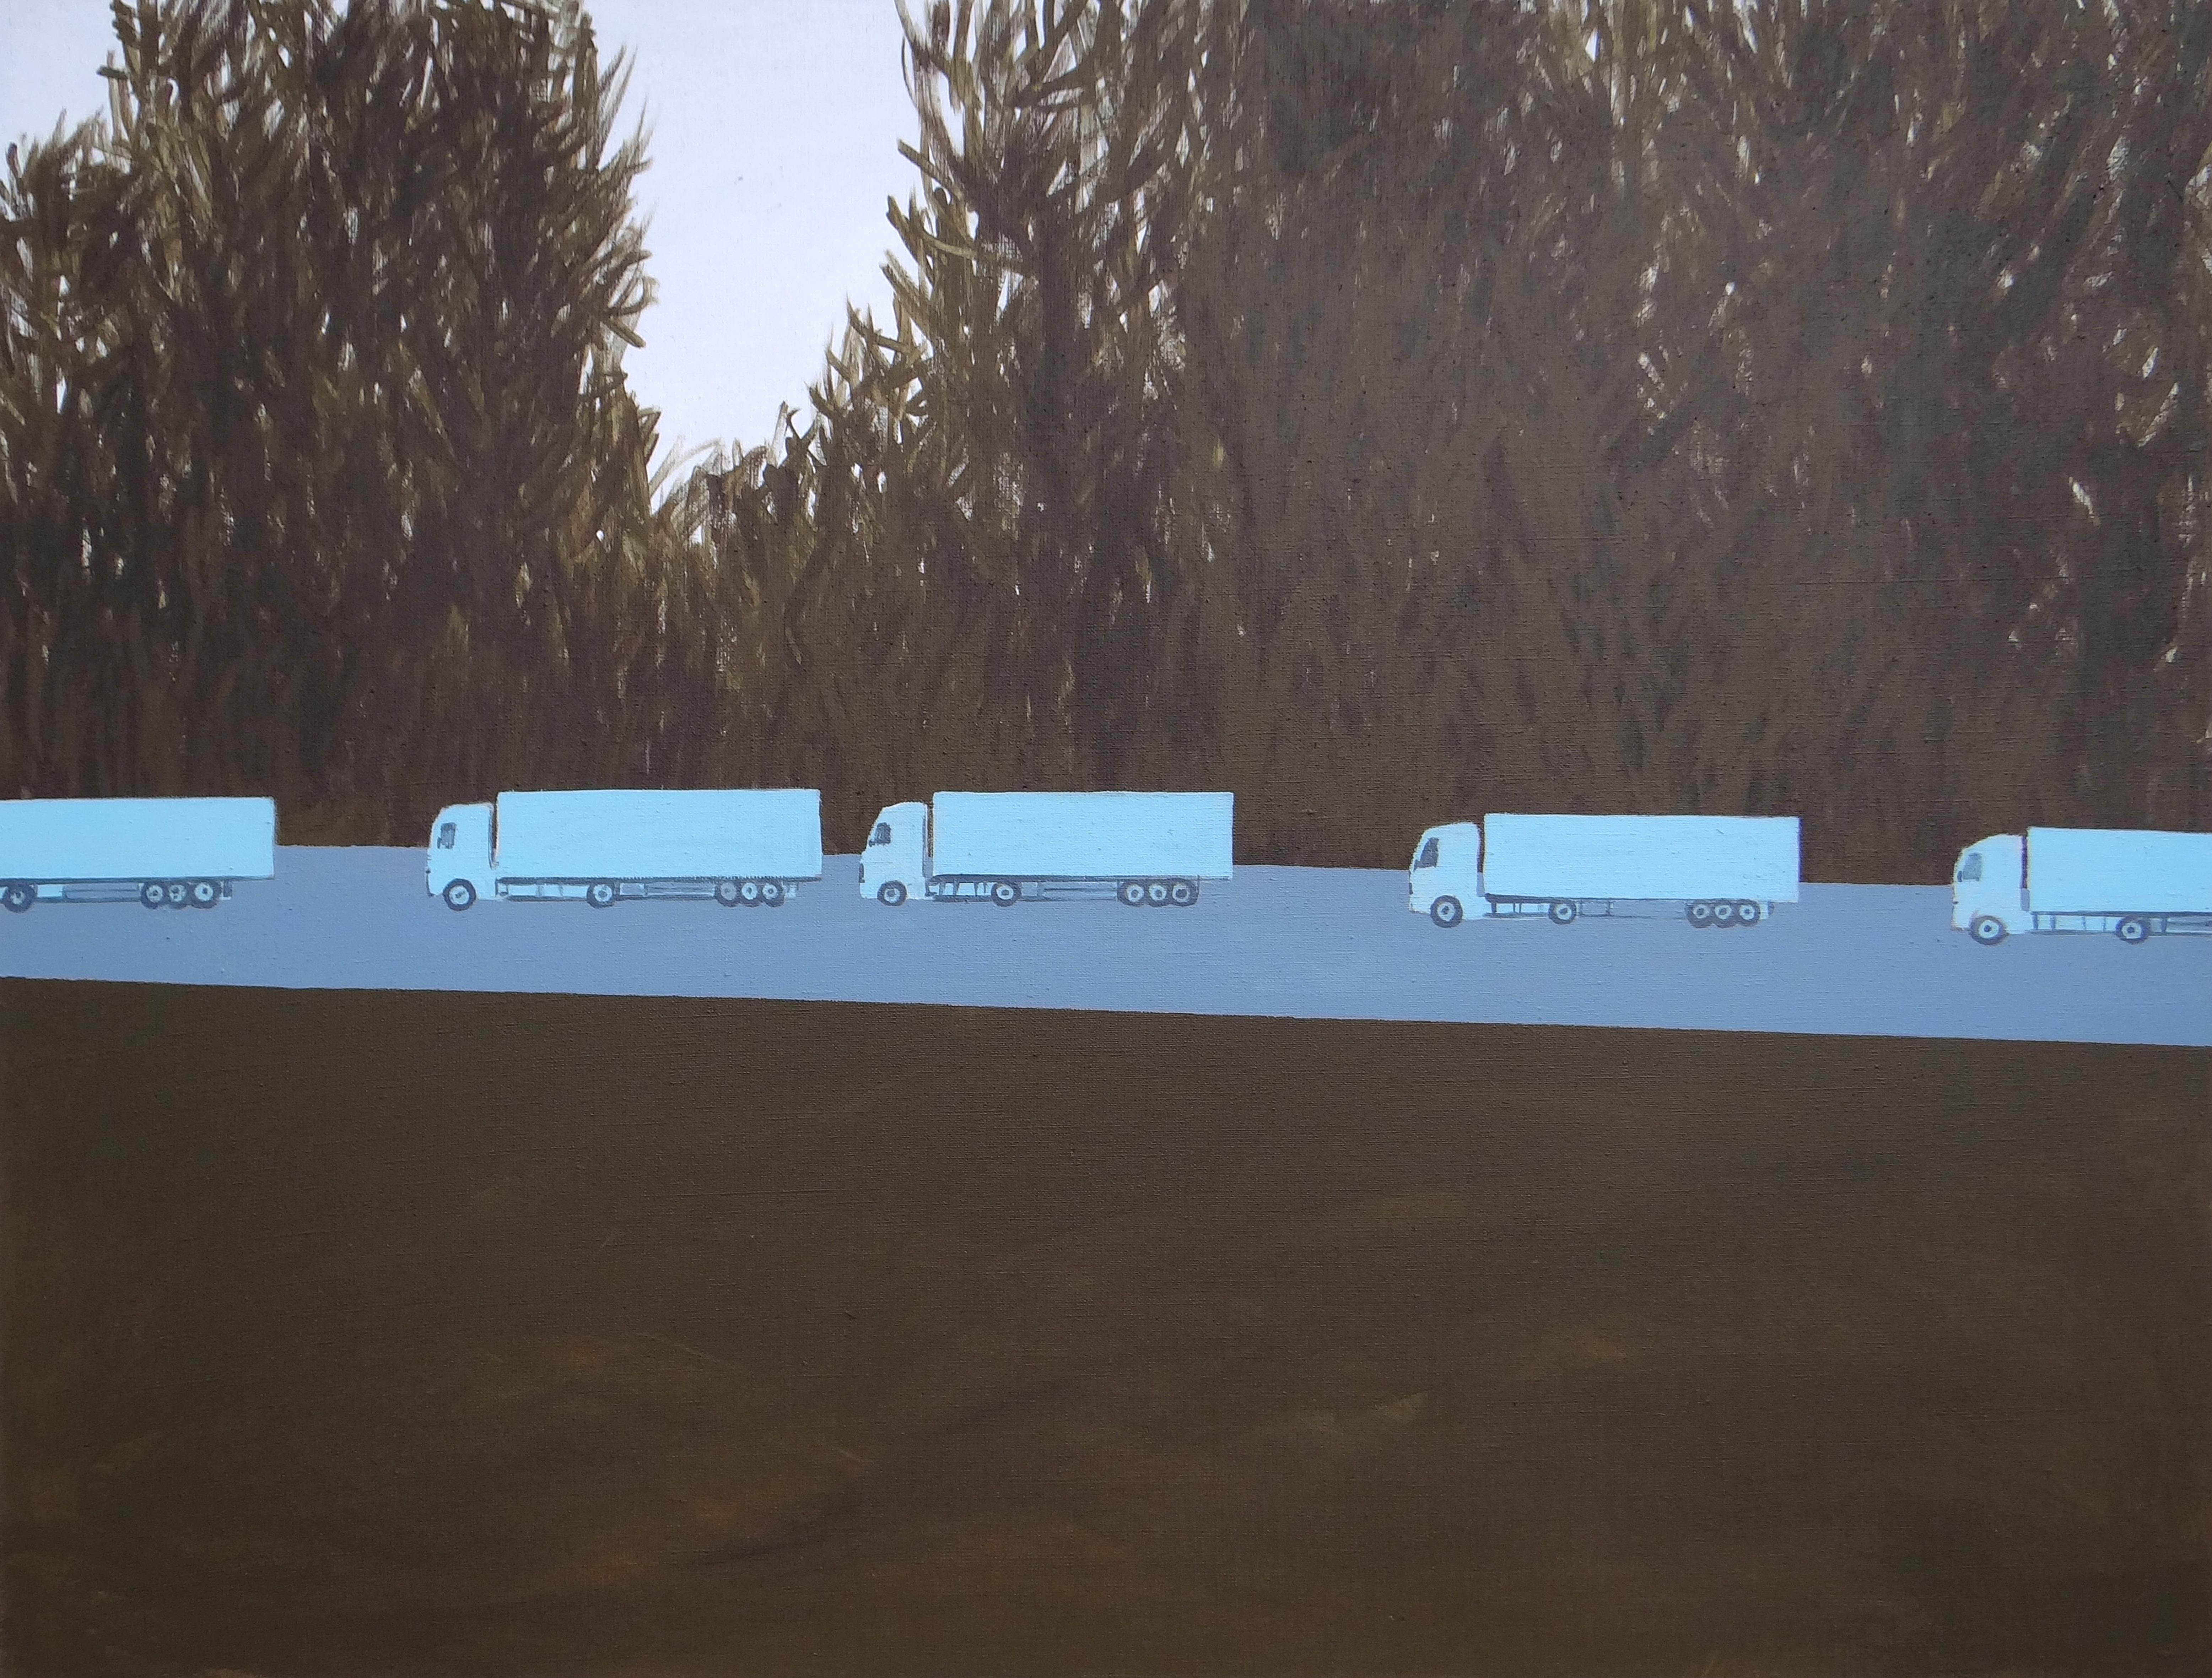 Landscape Painting Joanna Mrozowska - Colonne de camions 2 - Peinture expressive contemporaine de paysage, avenue des arbres